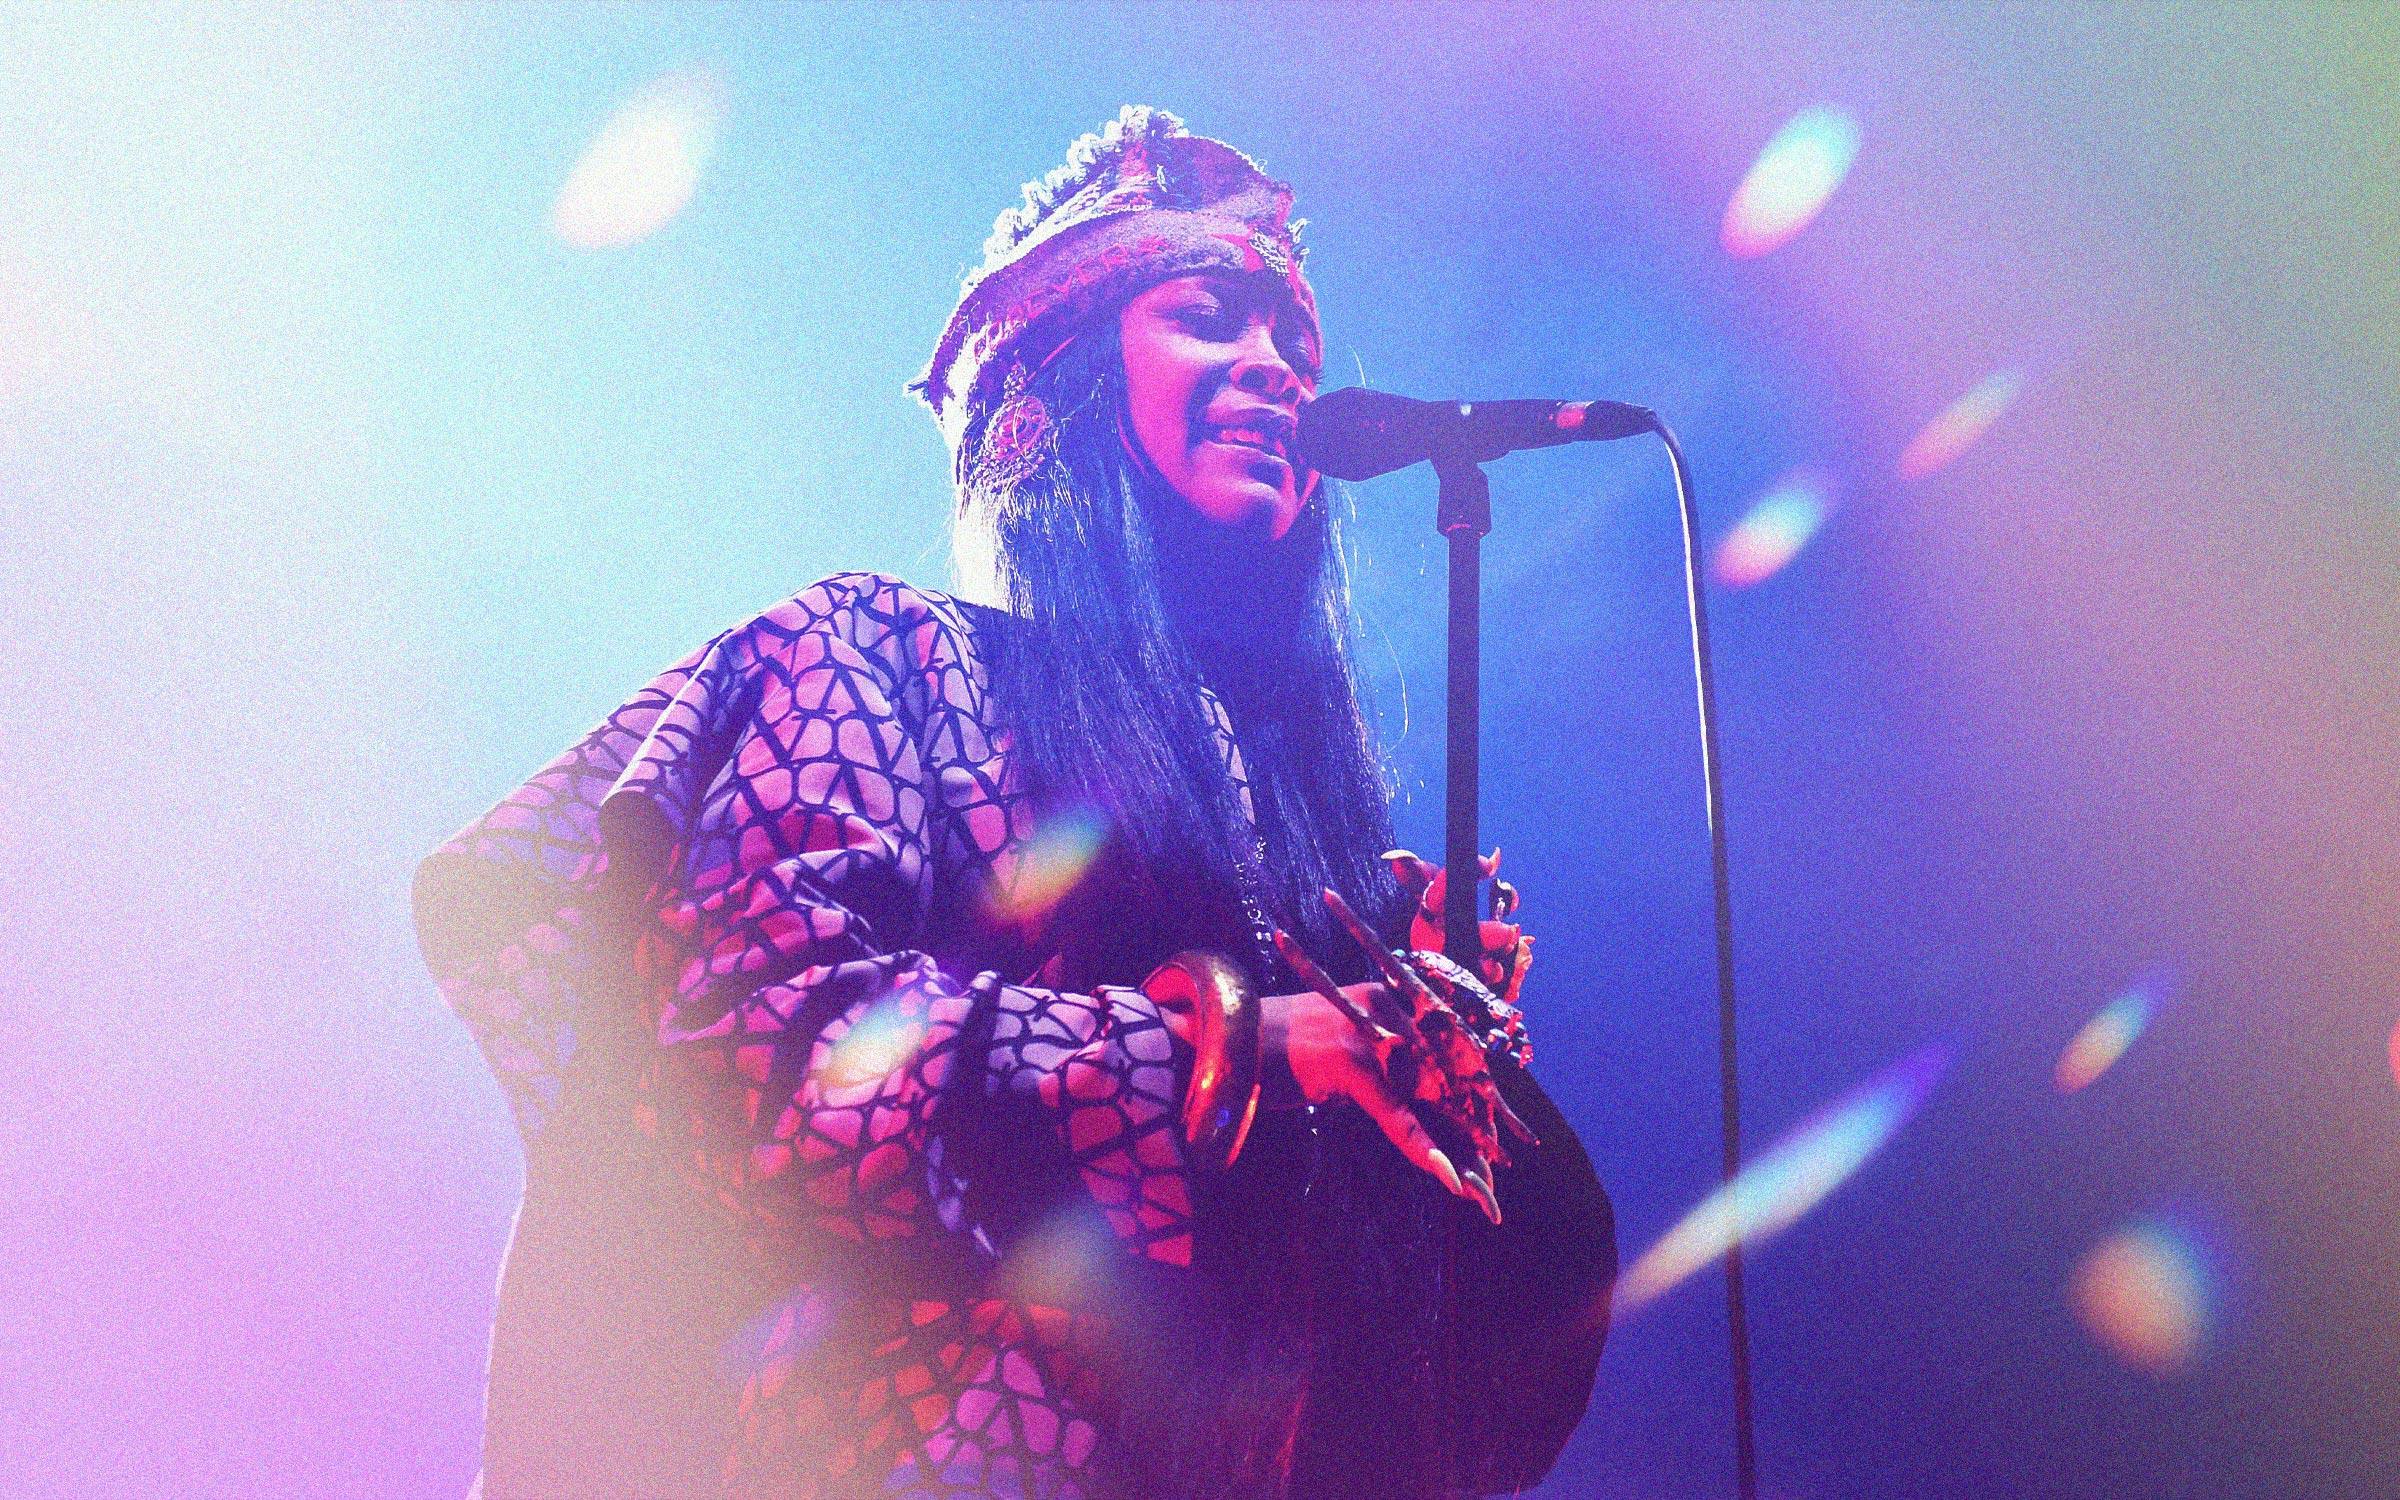 Get tickets to Erykah Badu's 'Unfollow Me' 2023 concert tour